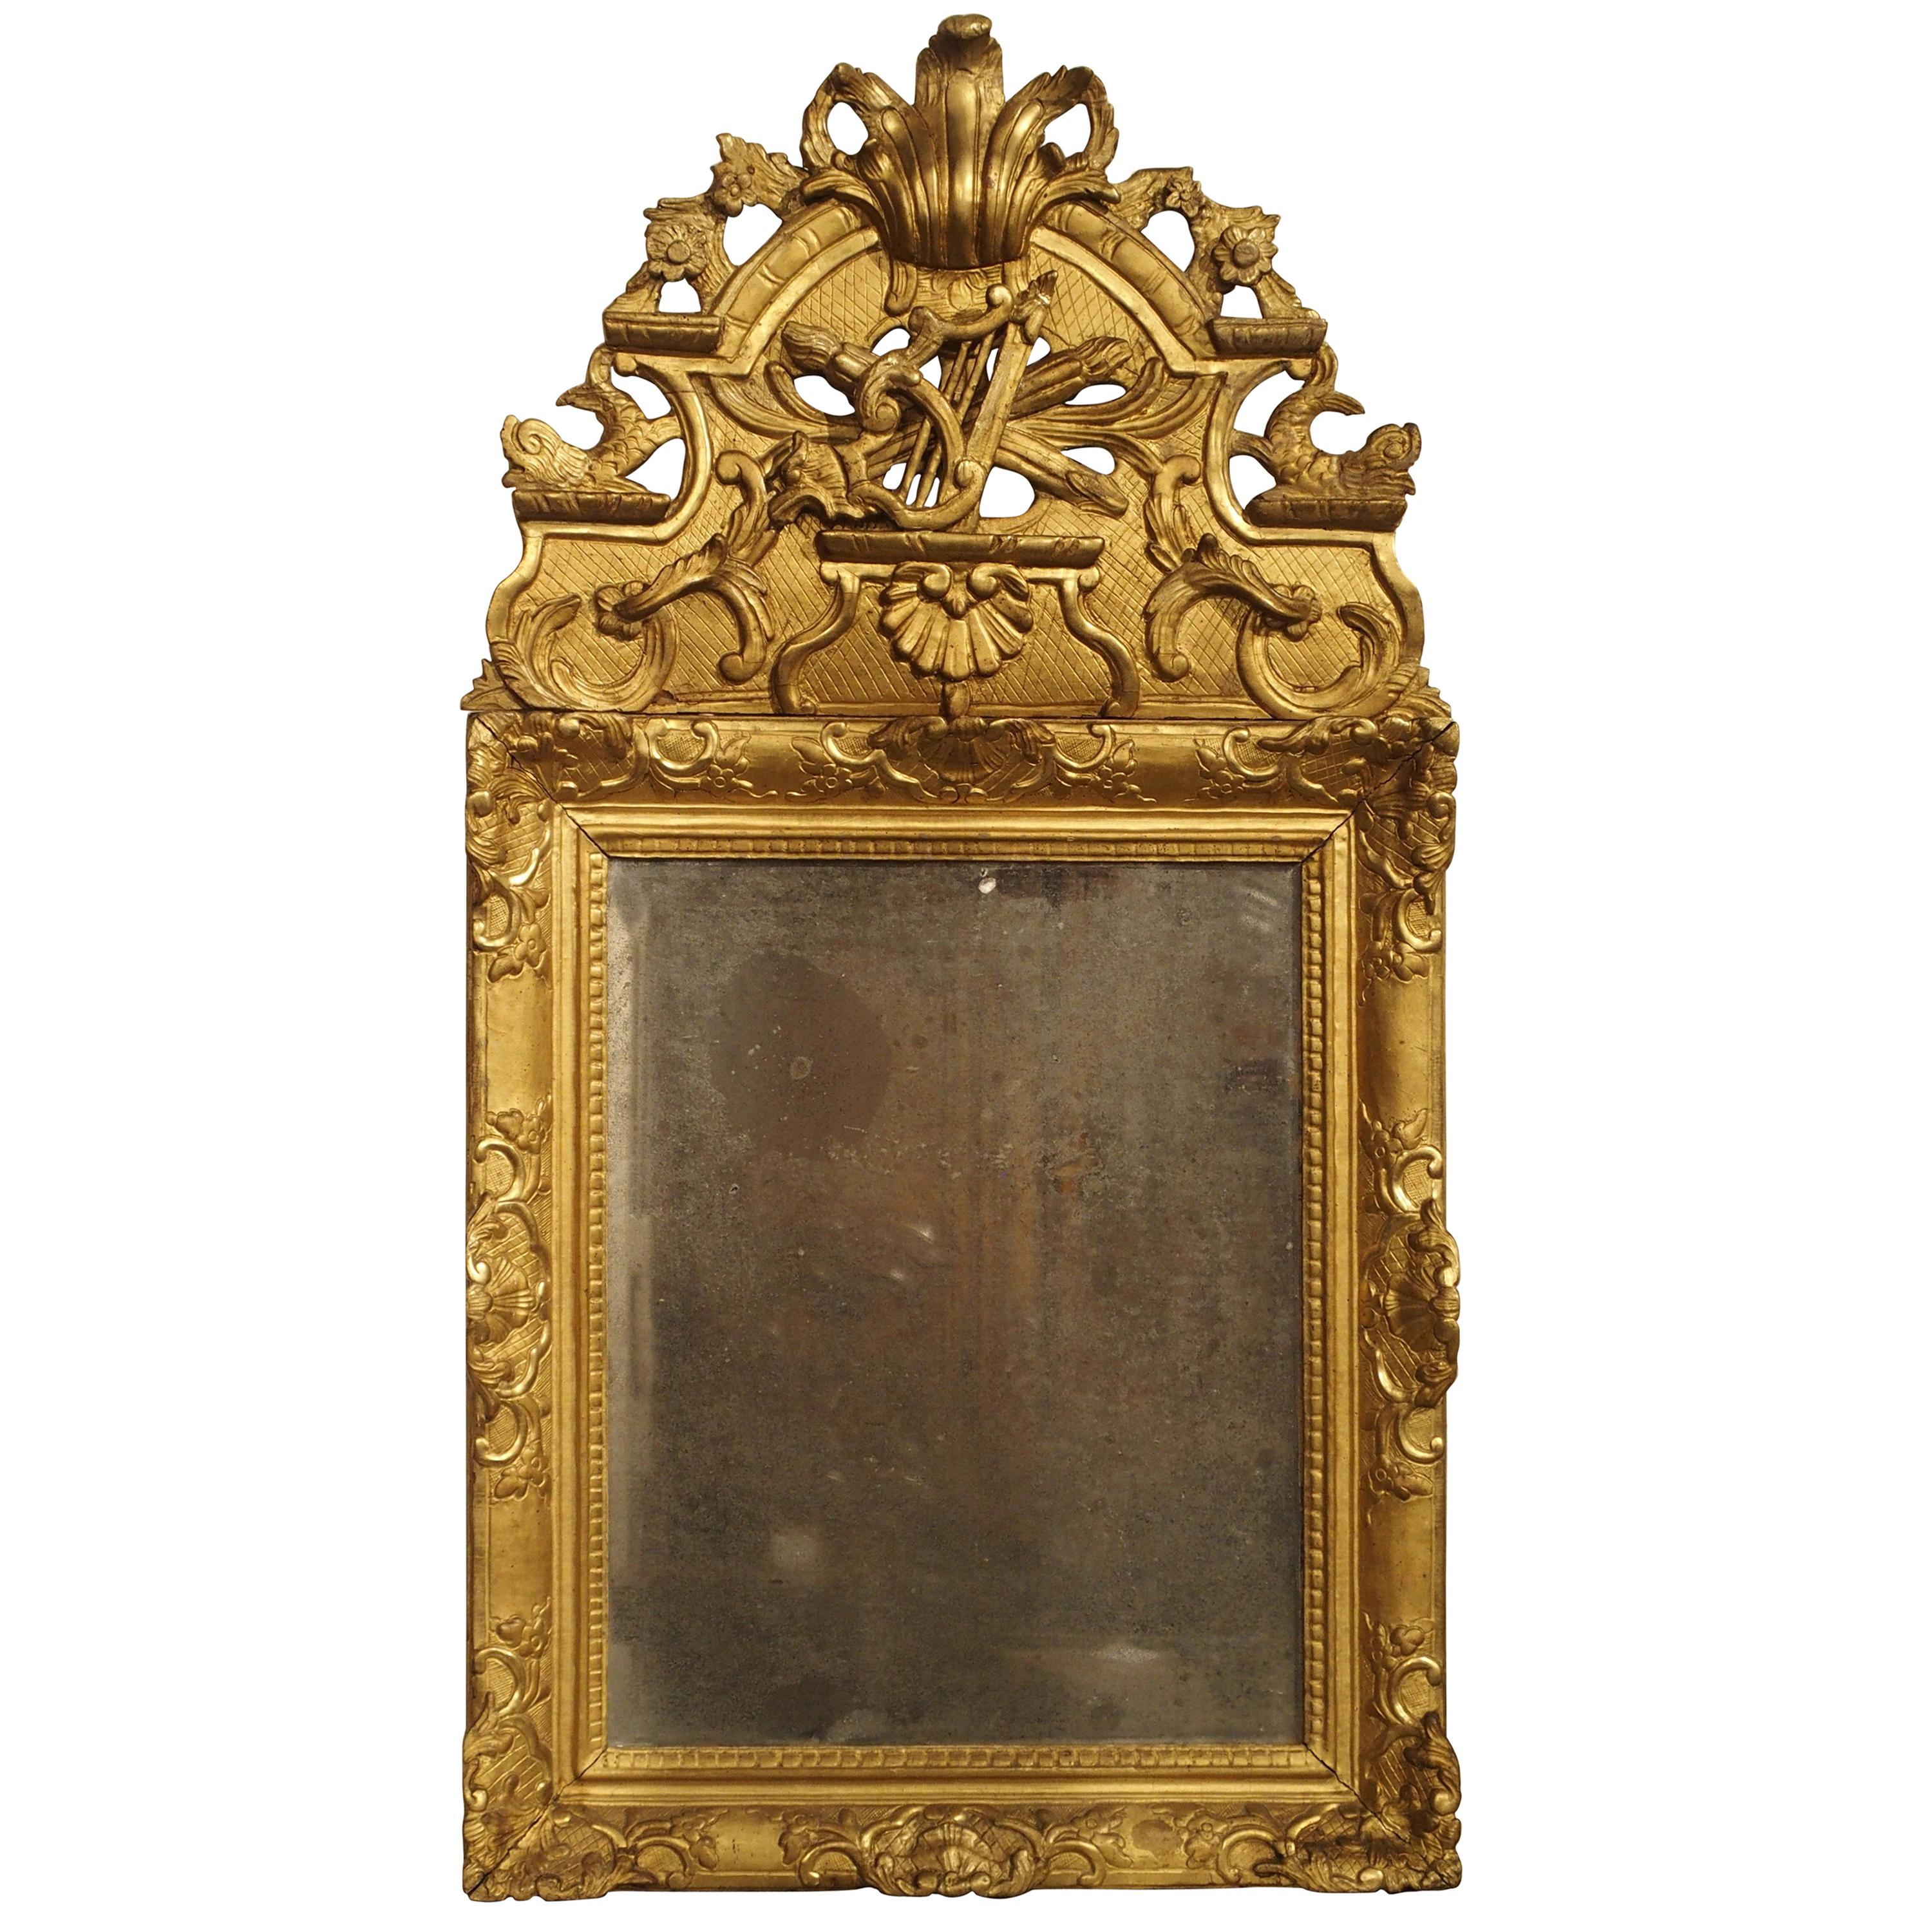 Miroir d'époque Régence française en bois doré, vers 1720